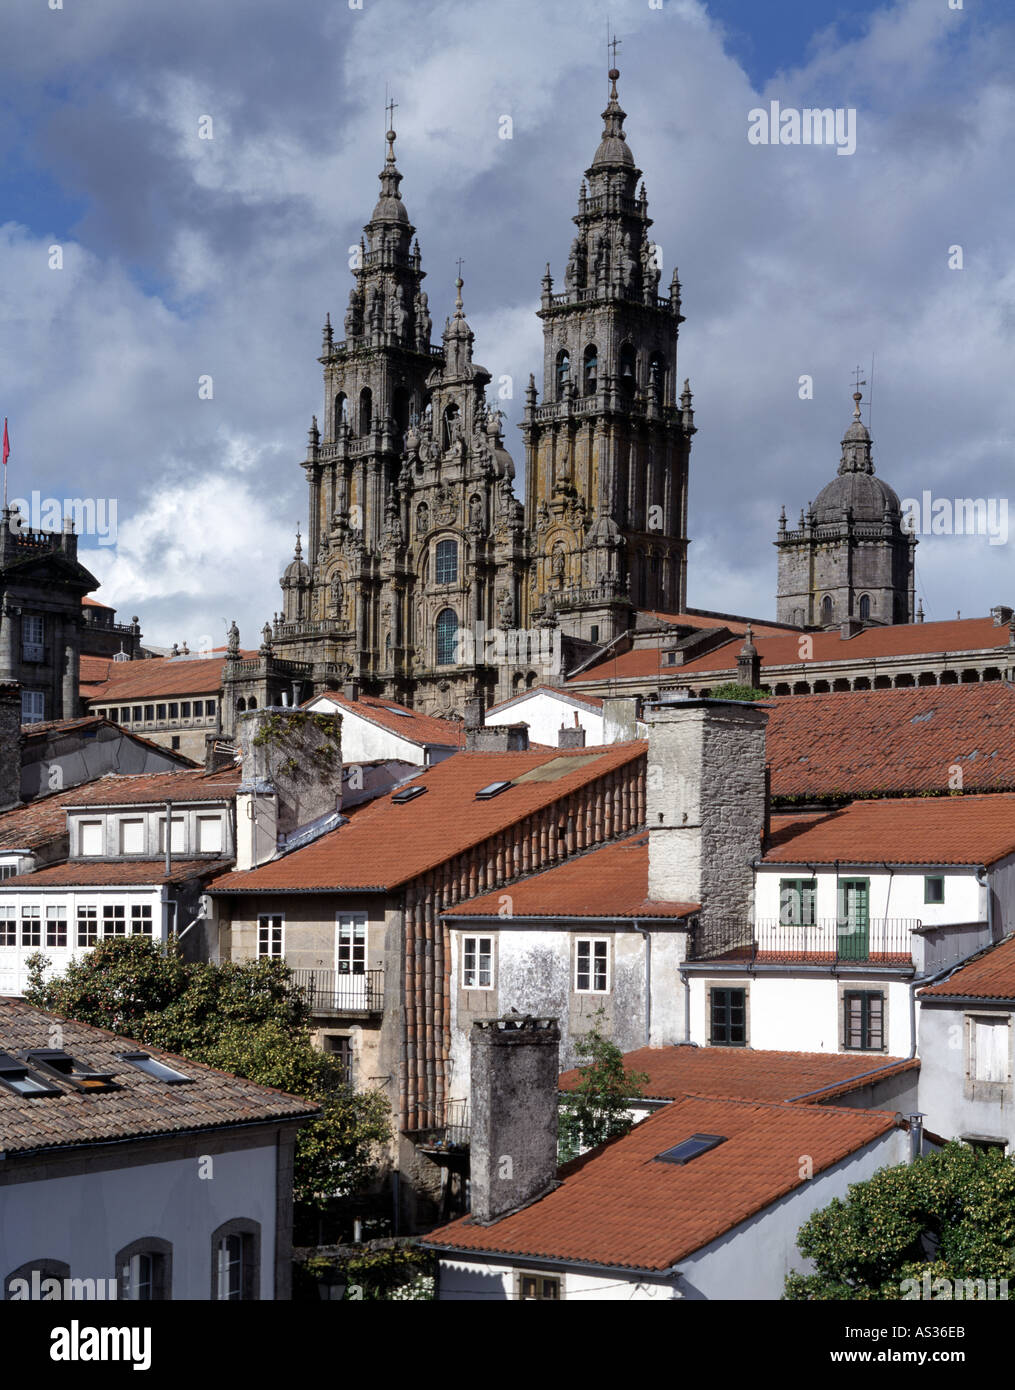 Santiago de Compostela, Kathedrale, Stadtteil Stock Photo